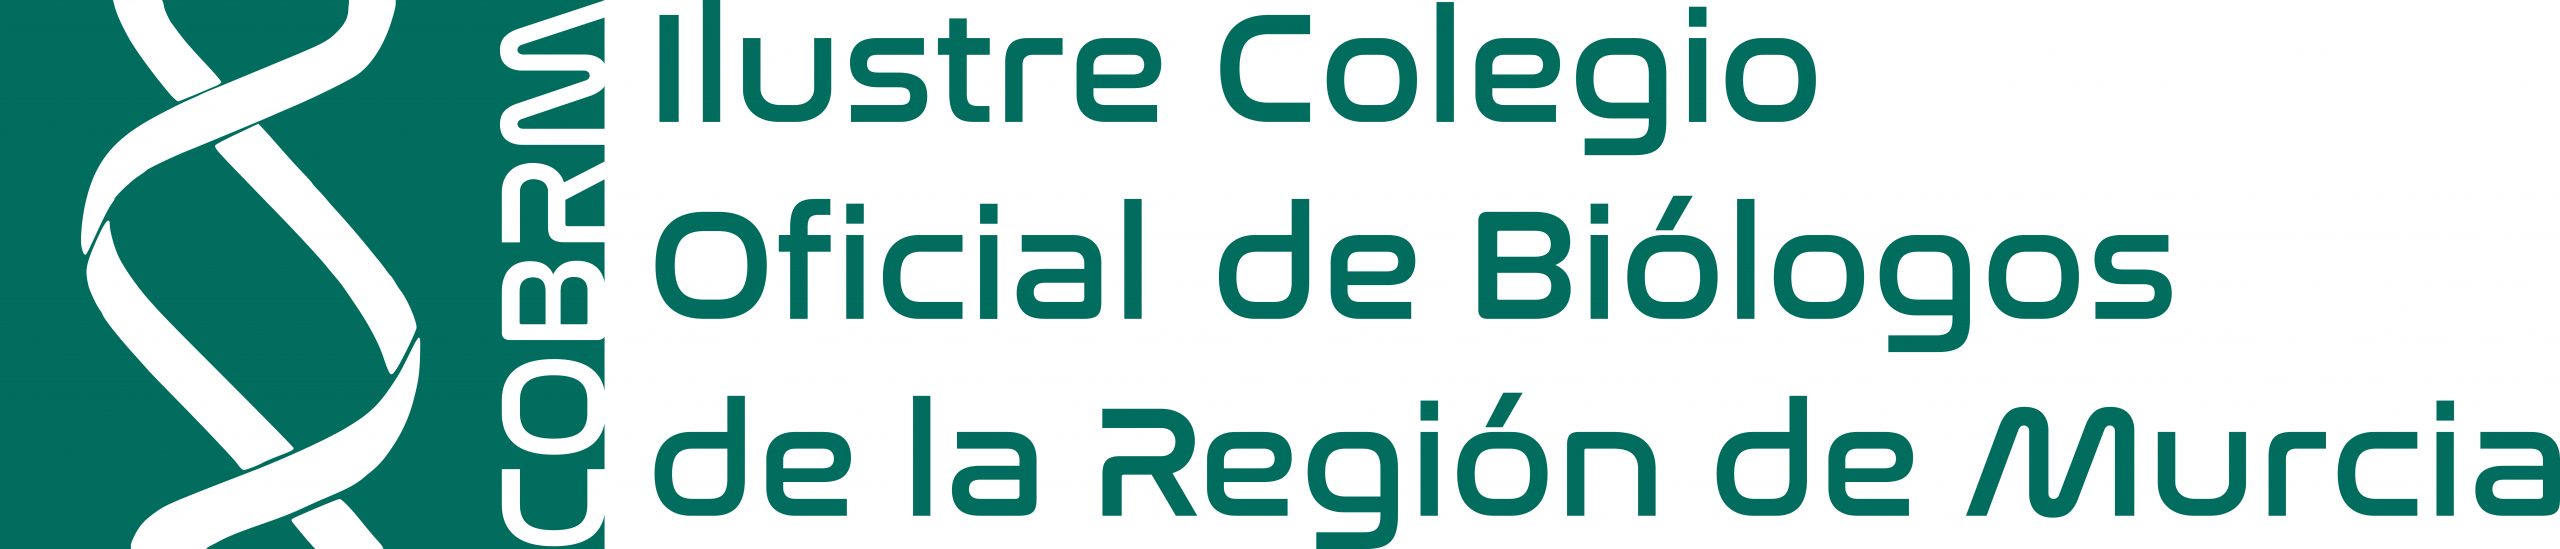 Ilustre Colegio Oficial de Biólogos de la Región de Murcia